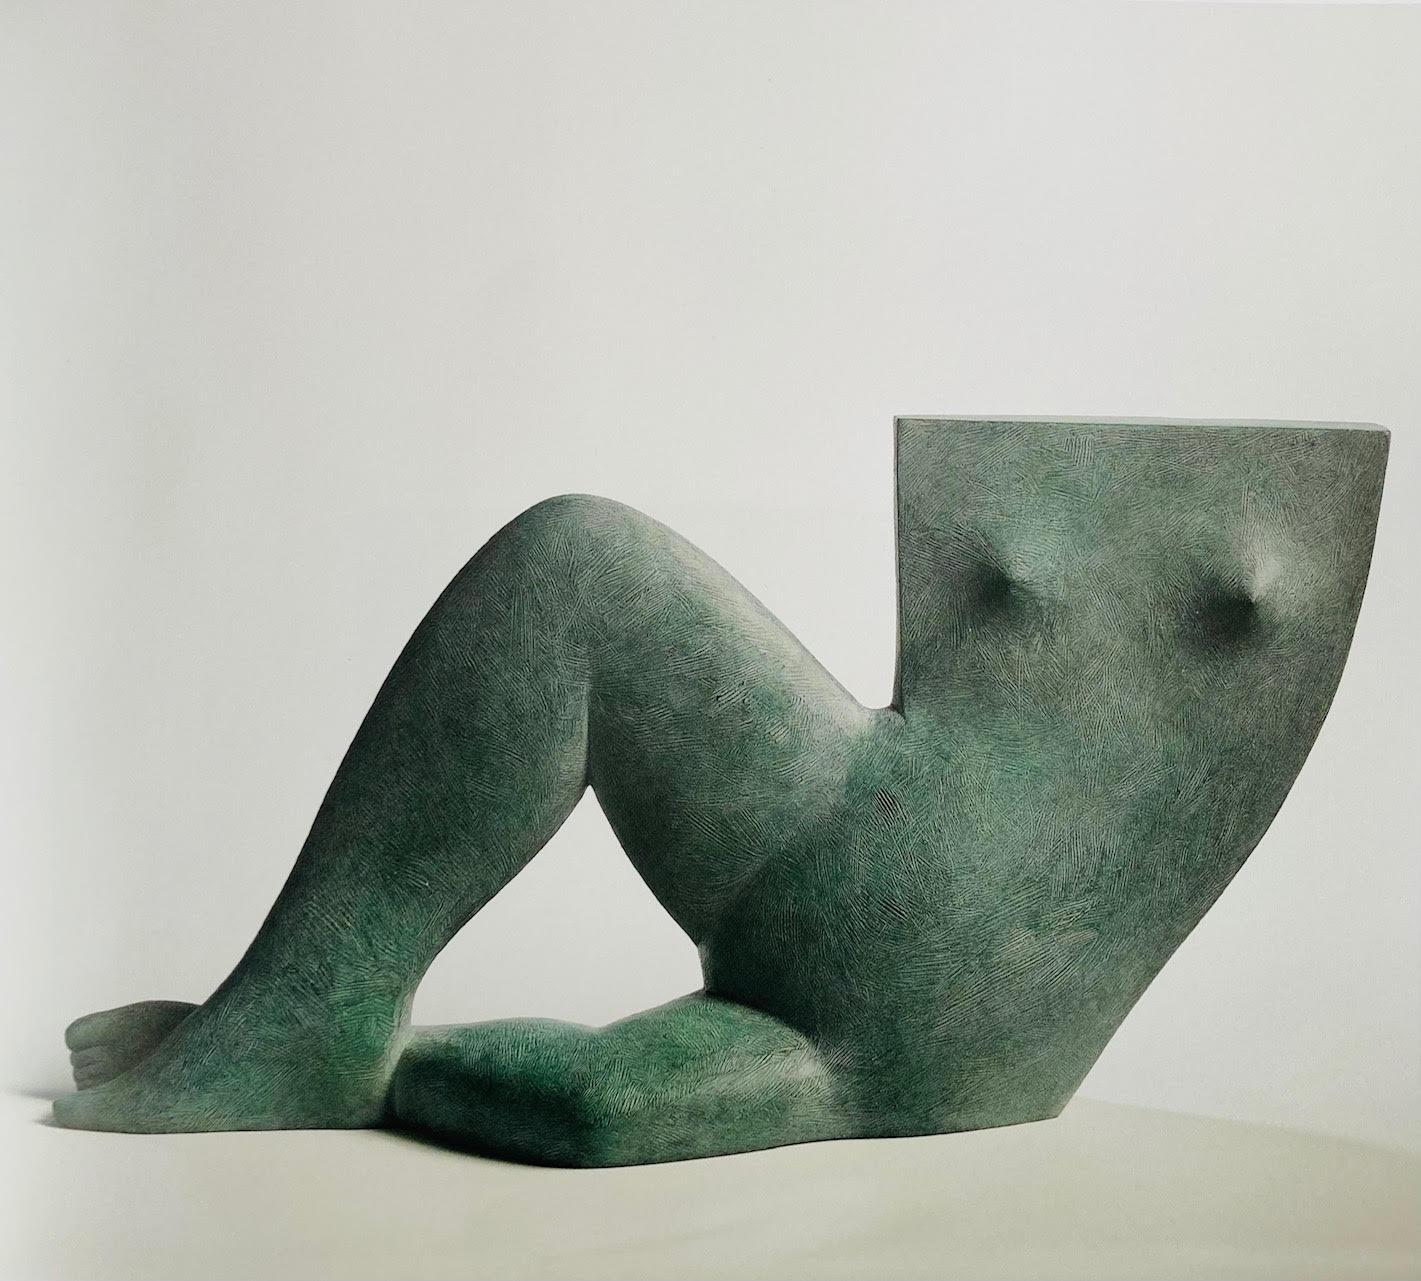 KOBE Figurative Sculpture – Figure aus Bronze, Skulptur eines Menschen mit grüner Patina